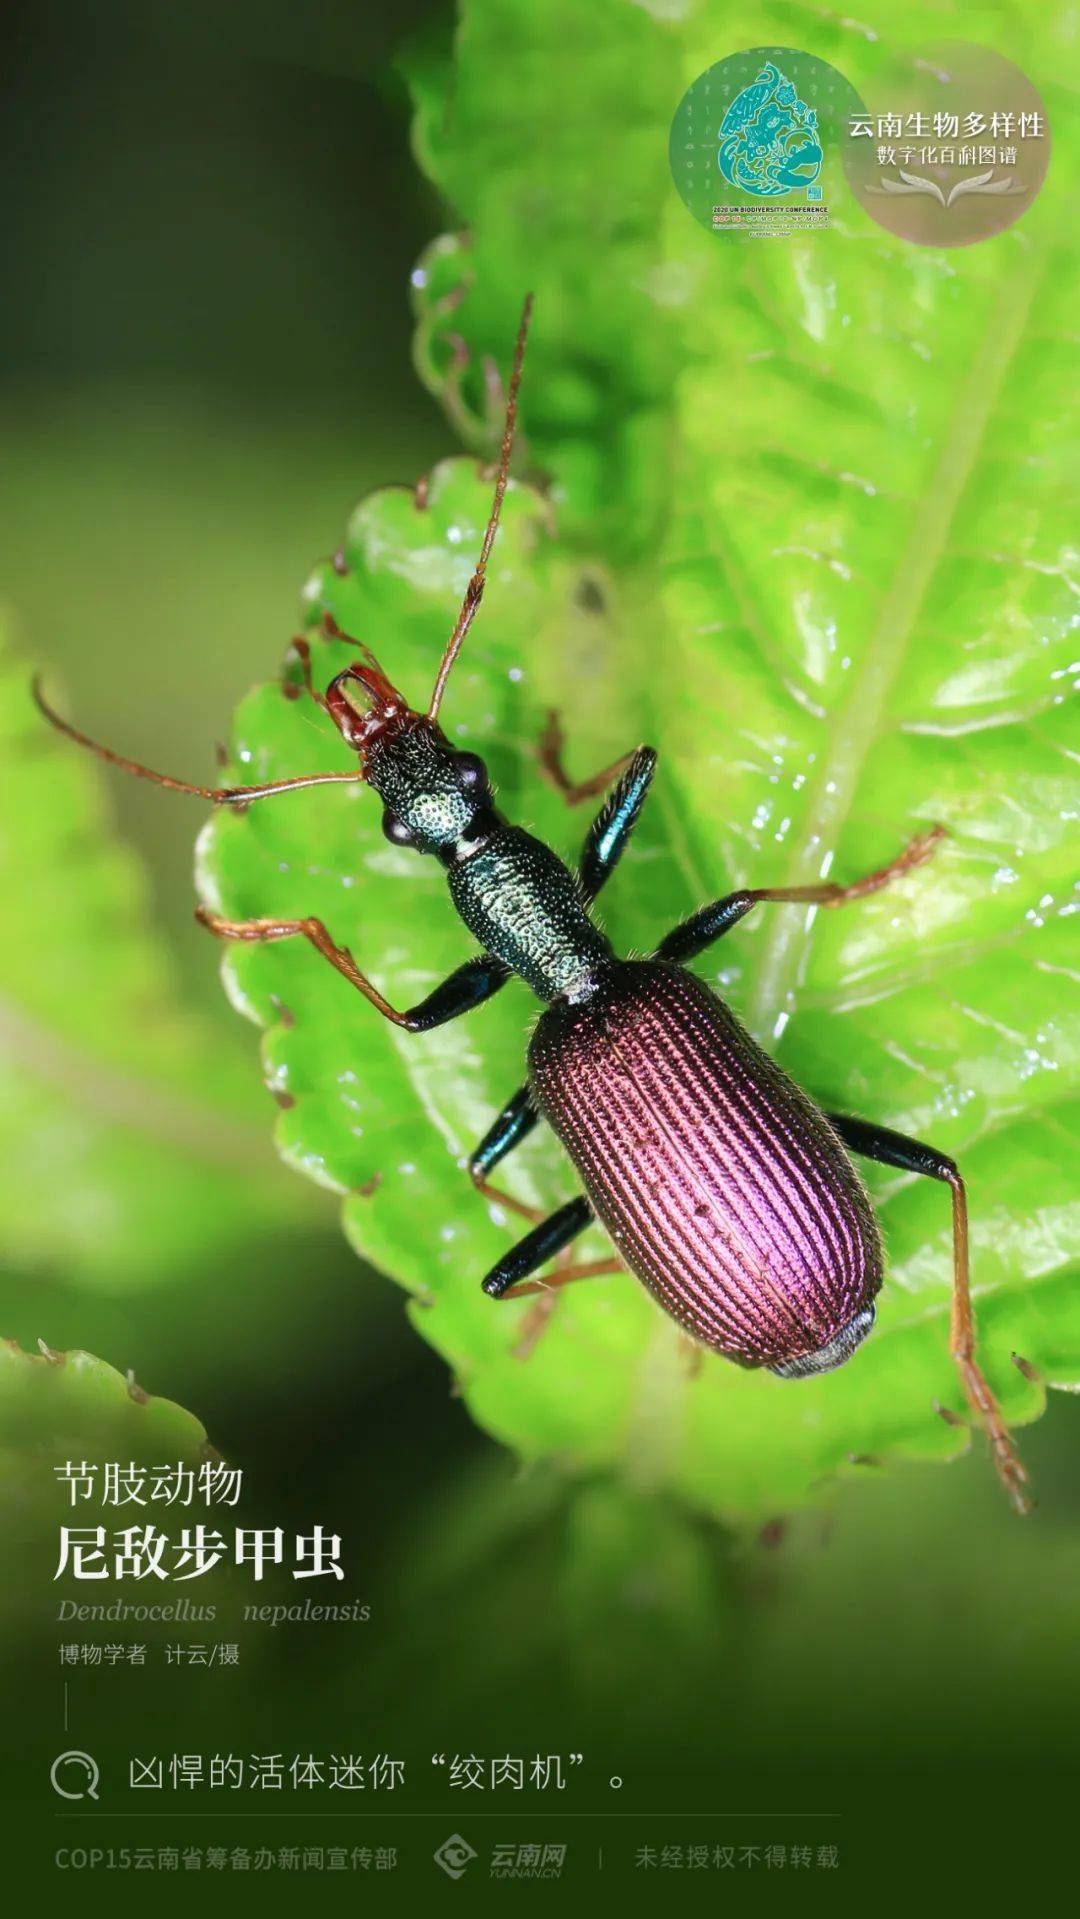 【云南生物多样性数字化百科图谱】节肢动物·尼敌步甲虫:凶悍的活体